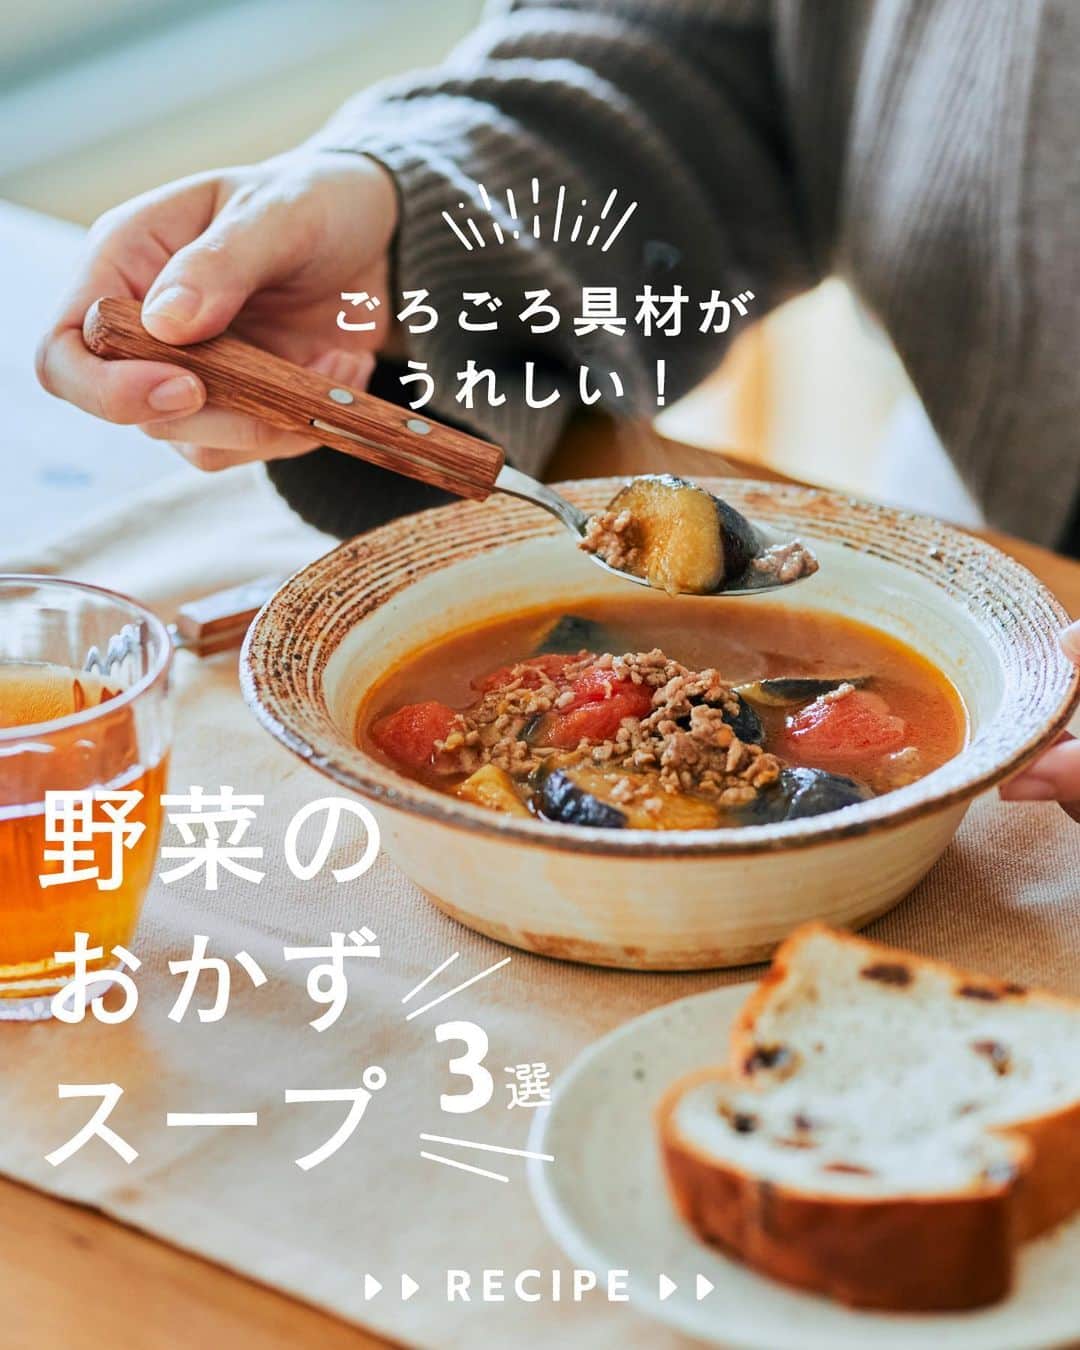 cooking_ajinomotoのインスタグラム：「作ってみたいと思ったら【❤️】の絵文字でコメントしてくださいね。 スープ作家・料理家の有賀薫さん（ @arigakaoru）にご考案いただいた 野菜をしっかりとれるおかずスープレシピをご紹介します。  ✔️きゅうりと水晶鶏のスープ：⏱15分 「丸鶏がらスープ™」で味を調えた、ささ身のプルプル食感が楽しめるスープ  ✔️なすとトマト、ひき肉のおかずスープ：⏱15分 「味の素KKコンソメ」で煮込んだ、野菜のおいしさがぎゅっと詰まったスープ  ✔️ごぼうと大根の梅けんちん汁：⏱25分 「ほんだし®」を使い、梅干しの酸味がアクセントになったほっこりするスープ  詳しいレシピは、スワイプして2枚目以降の画像をCHECK🔎 保存ボタンをタップして、ぜひ作ってみてくださいね。  *** たべる楽しさを、もっと 作る楽しさを、もっと 「AJINOMOTO PARK」 インスタグラムでは いつも生活の中心にある “食”を通じて毎日を明るく 楽しくするレシピを投稿しています🍳 ***  #味の素パークレシピ #ajinomotopark #おいしいねは笑顔の素 #アレンジレシピ #お手軽レシピ #時短レシピ #コンソメ #味の素KKコンソメ #ほんだし #丸鶏がらスープ #鶏がらスープの素 #スープレシピ #おかずスープ #有賀薫さんレシピ #野菜スープ #おかずスープ #スープ好き #けんちん汁 #野菜たっぷり #野菜たっぷりレシピ #野菜たっぷりスープ #なすレシピ #トマトレシピ #ごぼうレシピ #大根レシピ #鶏ささ身 #ささ身レシピ #きゅうりレシピ #根菜 #秋レシピ」